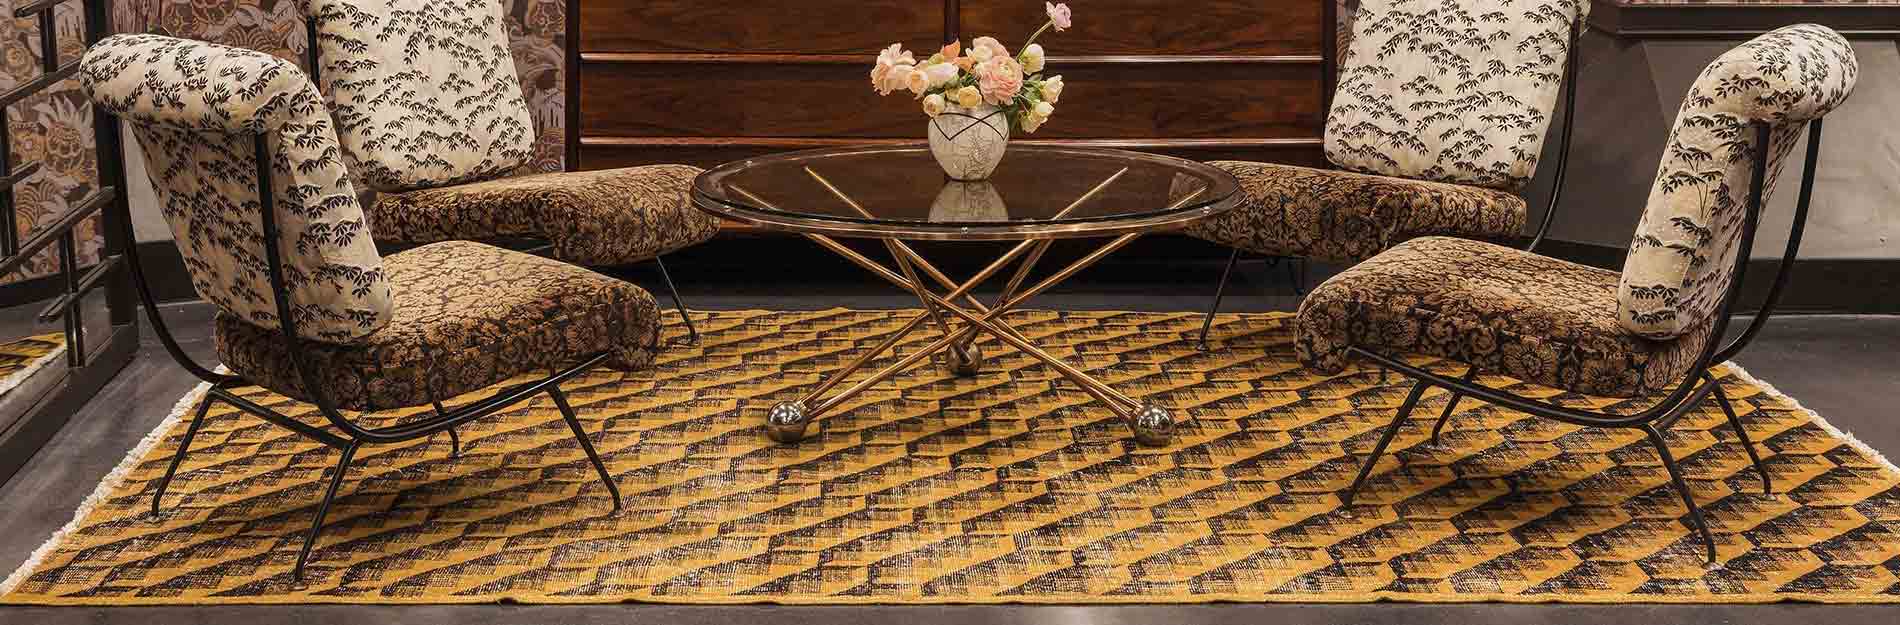 Unique Turkish Rugs Dallas Sivas Carpets Kelly Wearstler Design